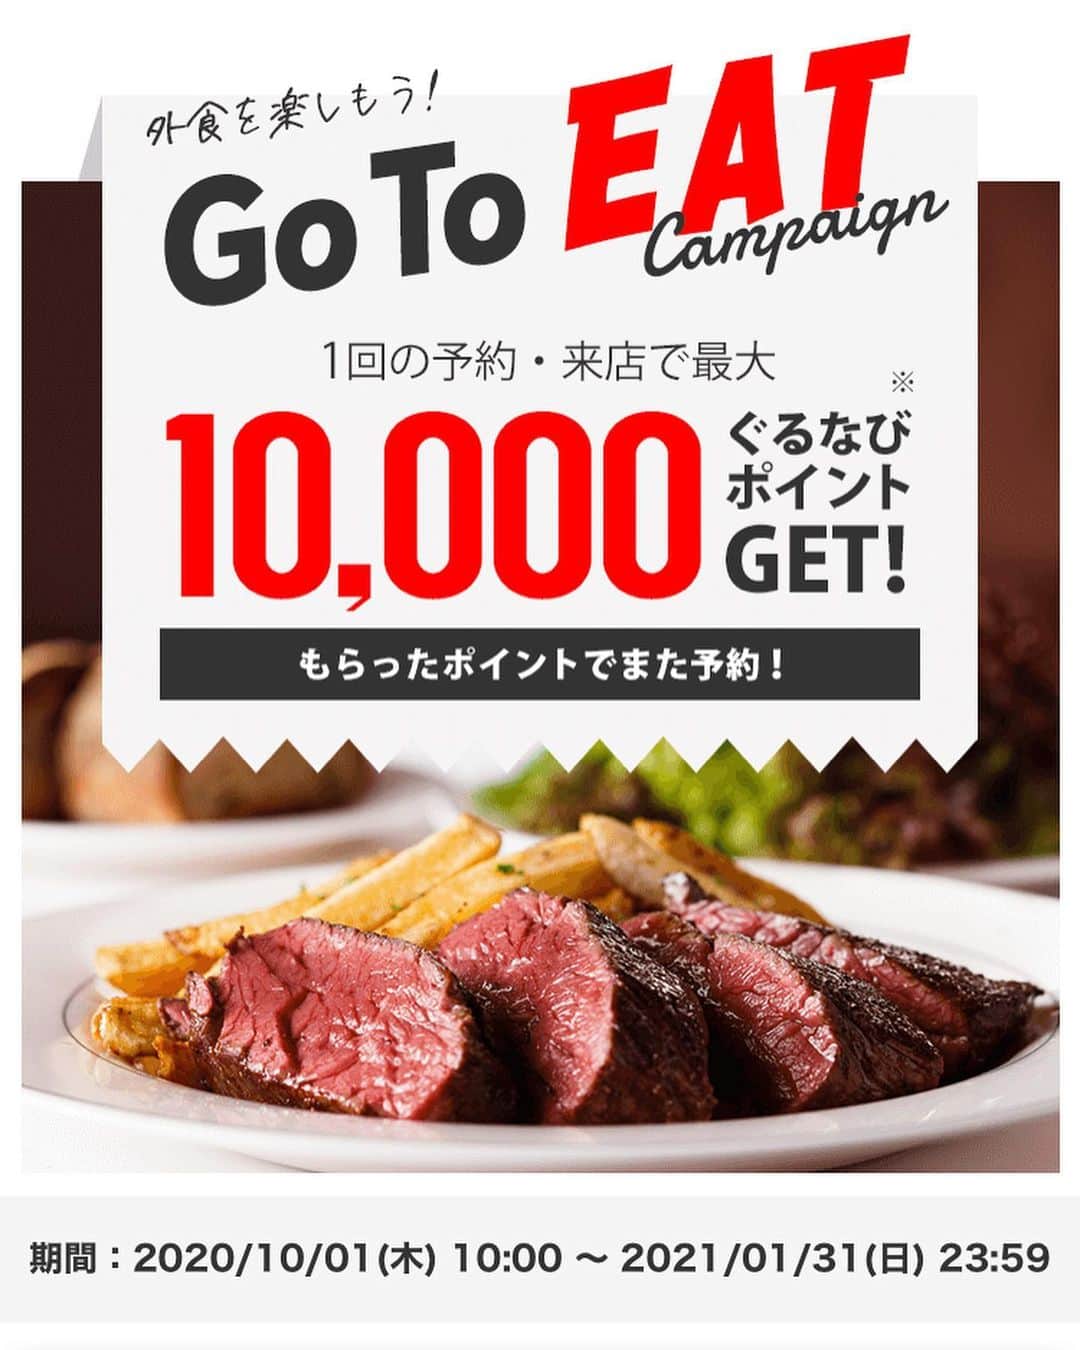 やきとり 有機野菜 ながしろのインスタグラム：「こんにちは😃  ながしろは『Go To EAT』参加してます〜😁👍  ぐるなび、食べログからネット予約いただきお得に食事しにきて下さい‼️  本日もお待ちしてます〜🙆‍♂️  やきとり有機野菜 ながしろ  〒553-0004 大阪府大阪市福島区玉川4-15-9 マンションニュー富士1F  電話：06-6225-1555  FAX：06-6225-1550  営業時間 PM5:00~AM12:00 * "やきとり有機野菜　ながしろ"のLINE＠はじめました！ お得な情報をお届けしますので、下記の  リンクから友だち追加してみてください。 https://line.me/R/ti/p/%40jfh1784t  #居酒屋#焼き鳥#日本酒#つくねチーズ#絶品#美味しい店#こだわり#食べログ#食べるの大好き#グルメ部#大阪グルメ#フォトジェニック#宴会#飲み会#野菜#梅田グルメ#福島#野田#大阪#ながしろ#ト18食堂#弁当#健康#サラダ#gotoeat #ぐるなび#食べログ#テラス席#開放感」